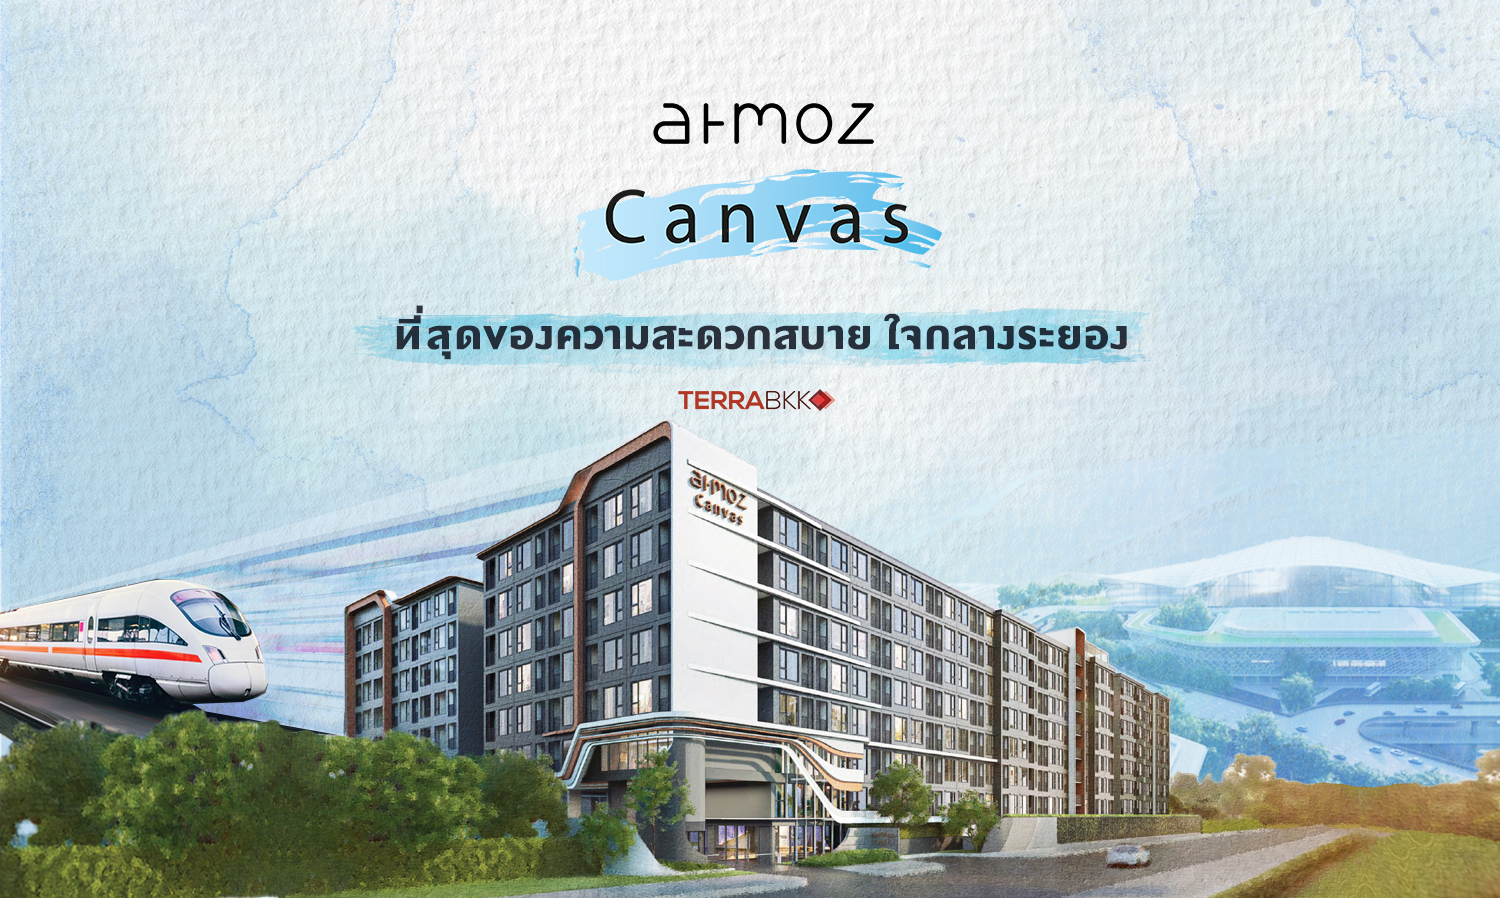 Atmoz Canvas Rayong ที่สุดของความสะดวกสบาย ใจกลางระยอง